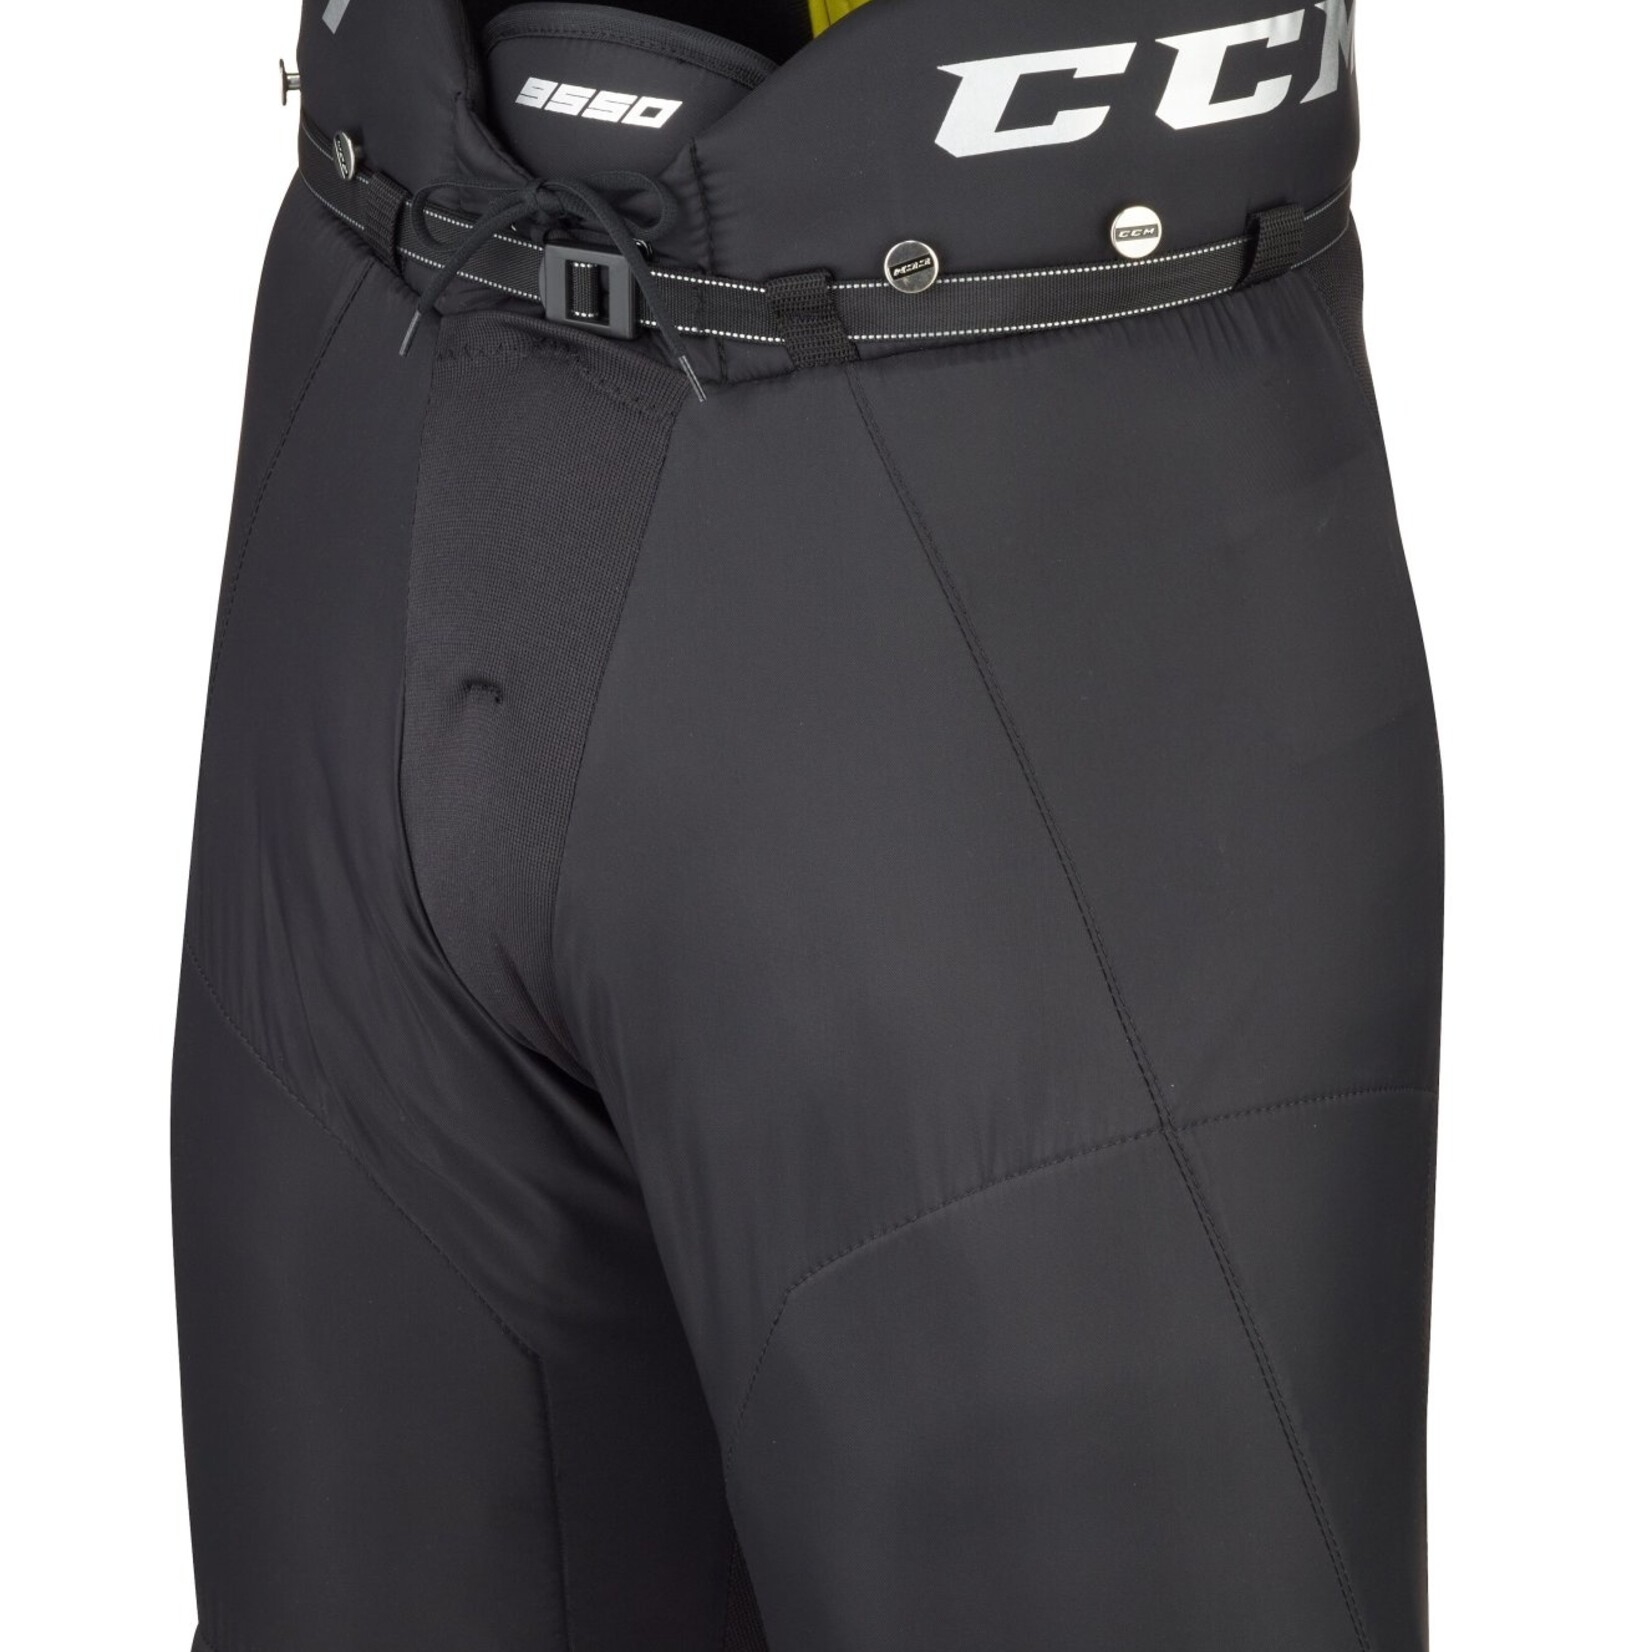 CCM CCM Hockey Pants, Tacks 9550, Senior